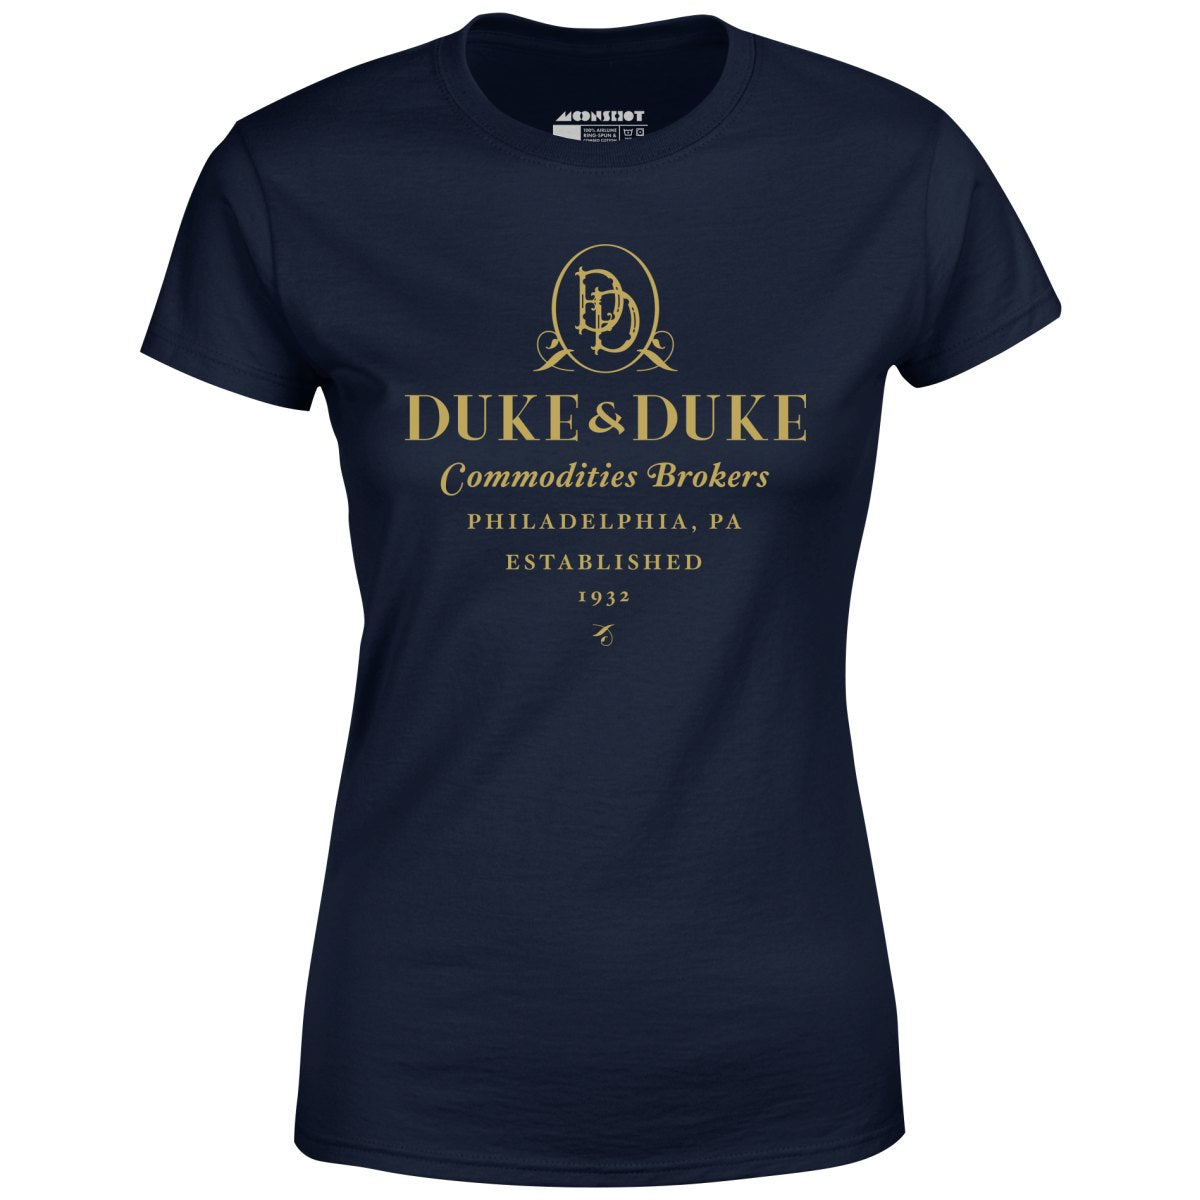 Duke & Duke Commodities Brokers - Women's T-Shirt